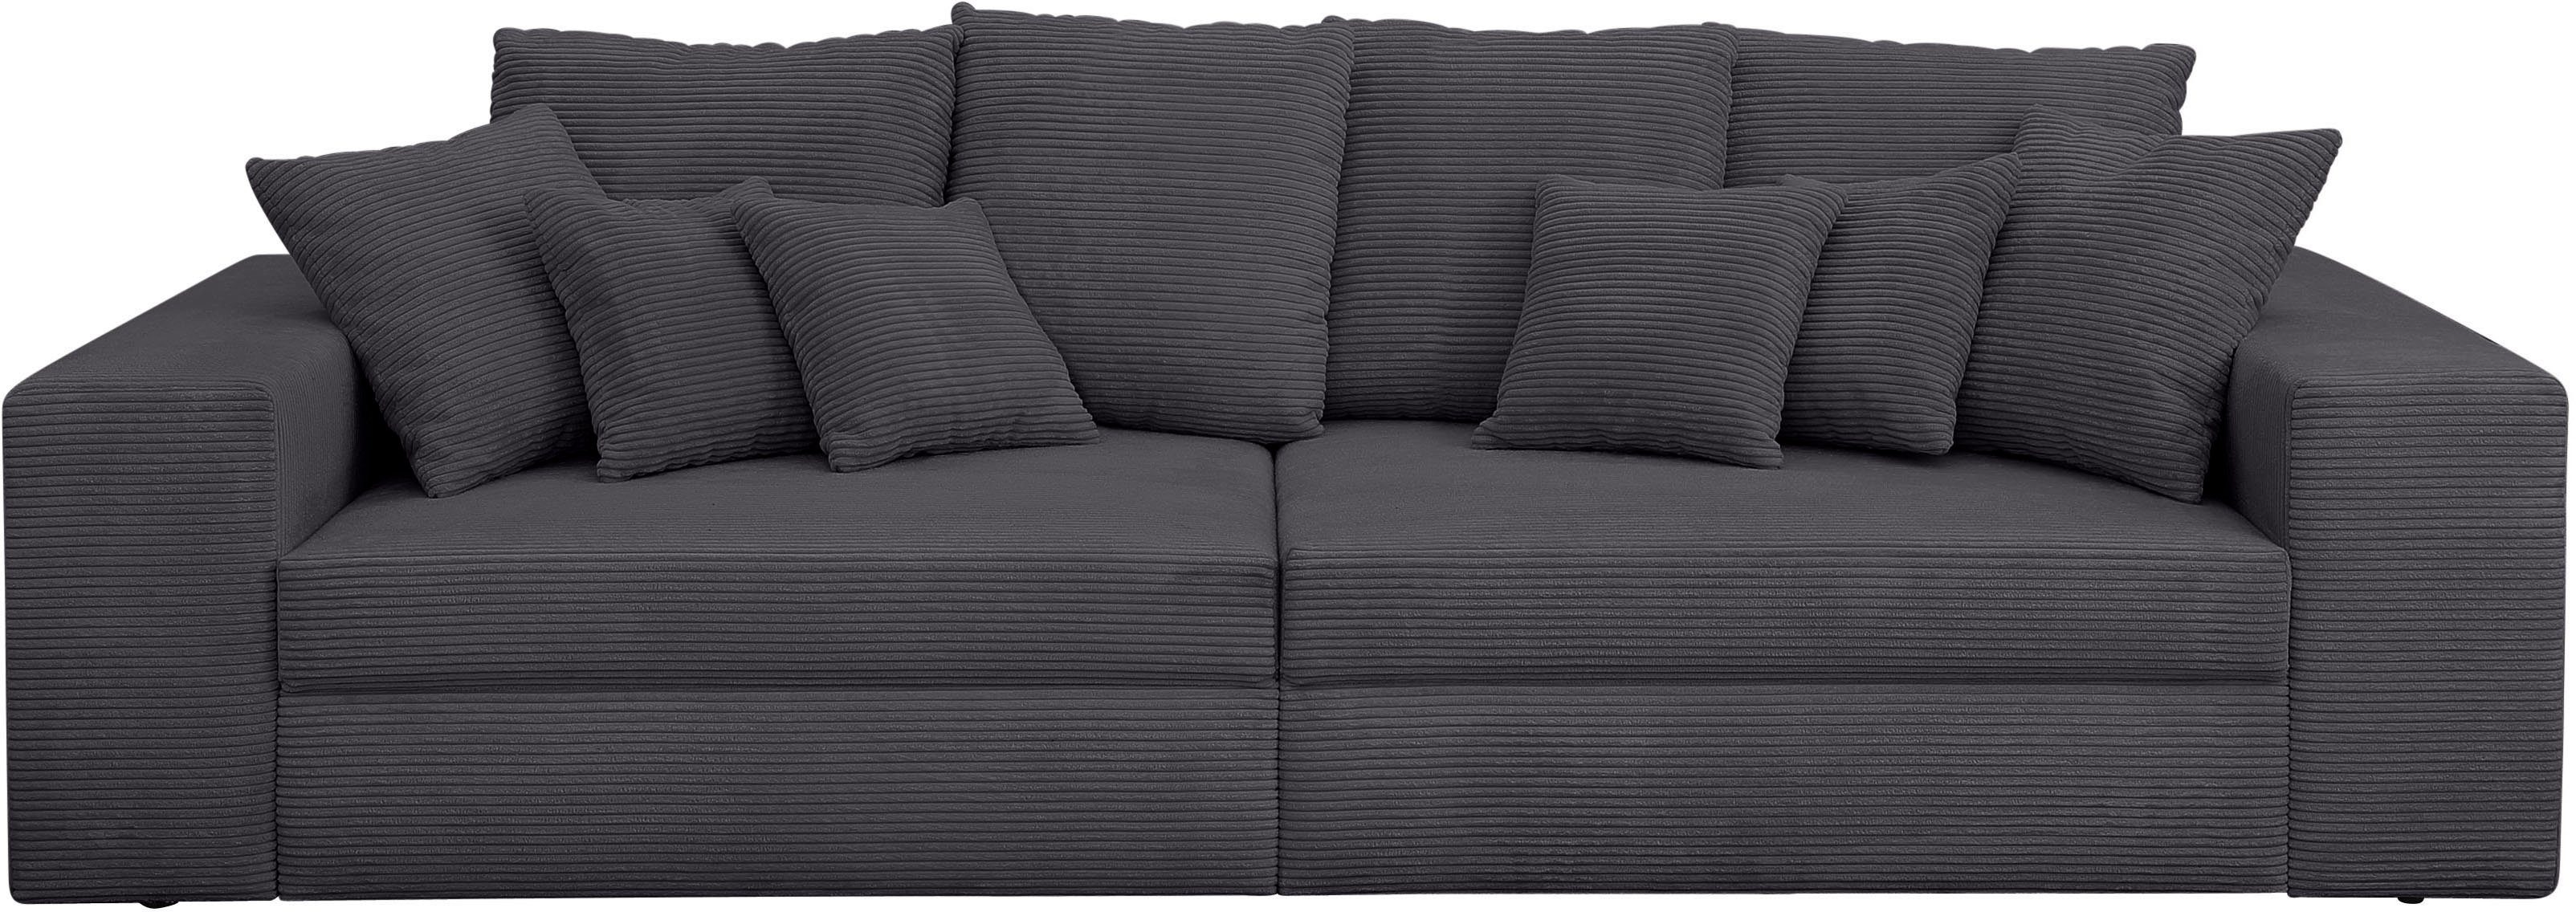 Mr. Couch Big-Sofa »Corona«, wahlweise mit Kaltschaum (140kg  Belastung/Sitz) und Bettfunktion, Cord-Bezug online kaufen | OTTO